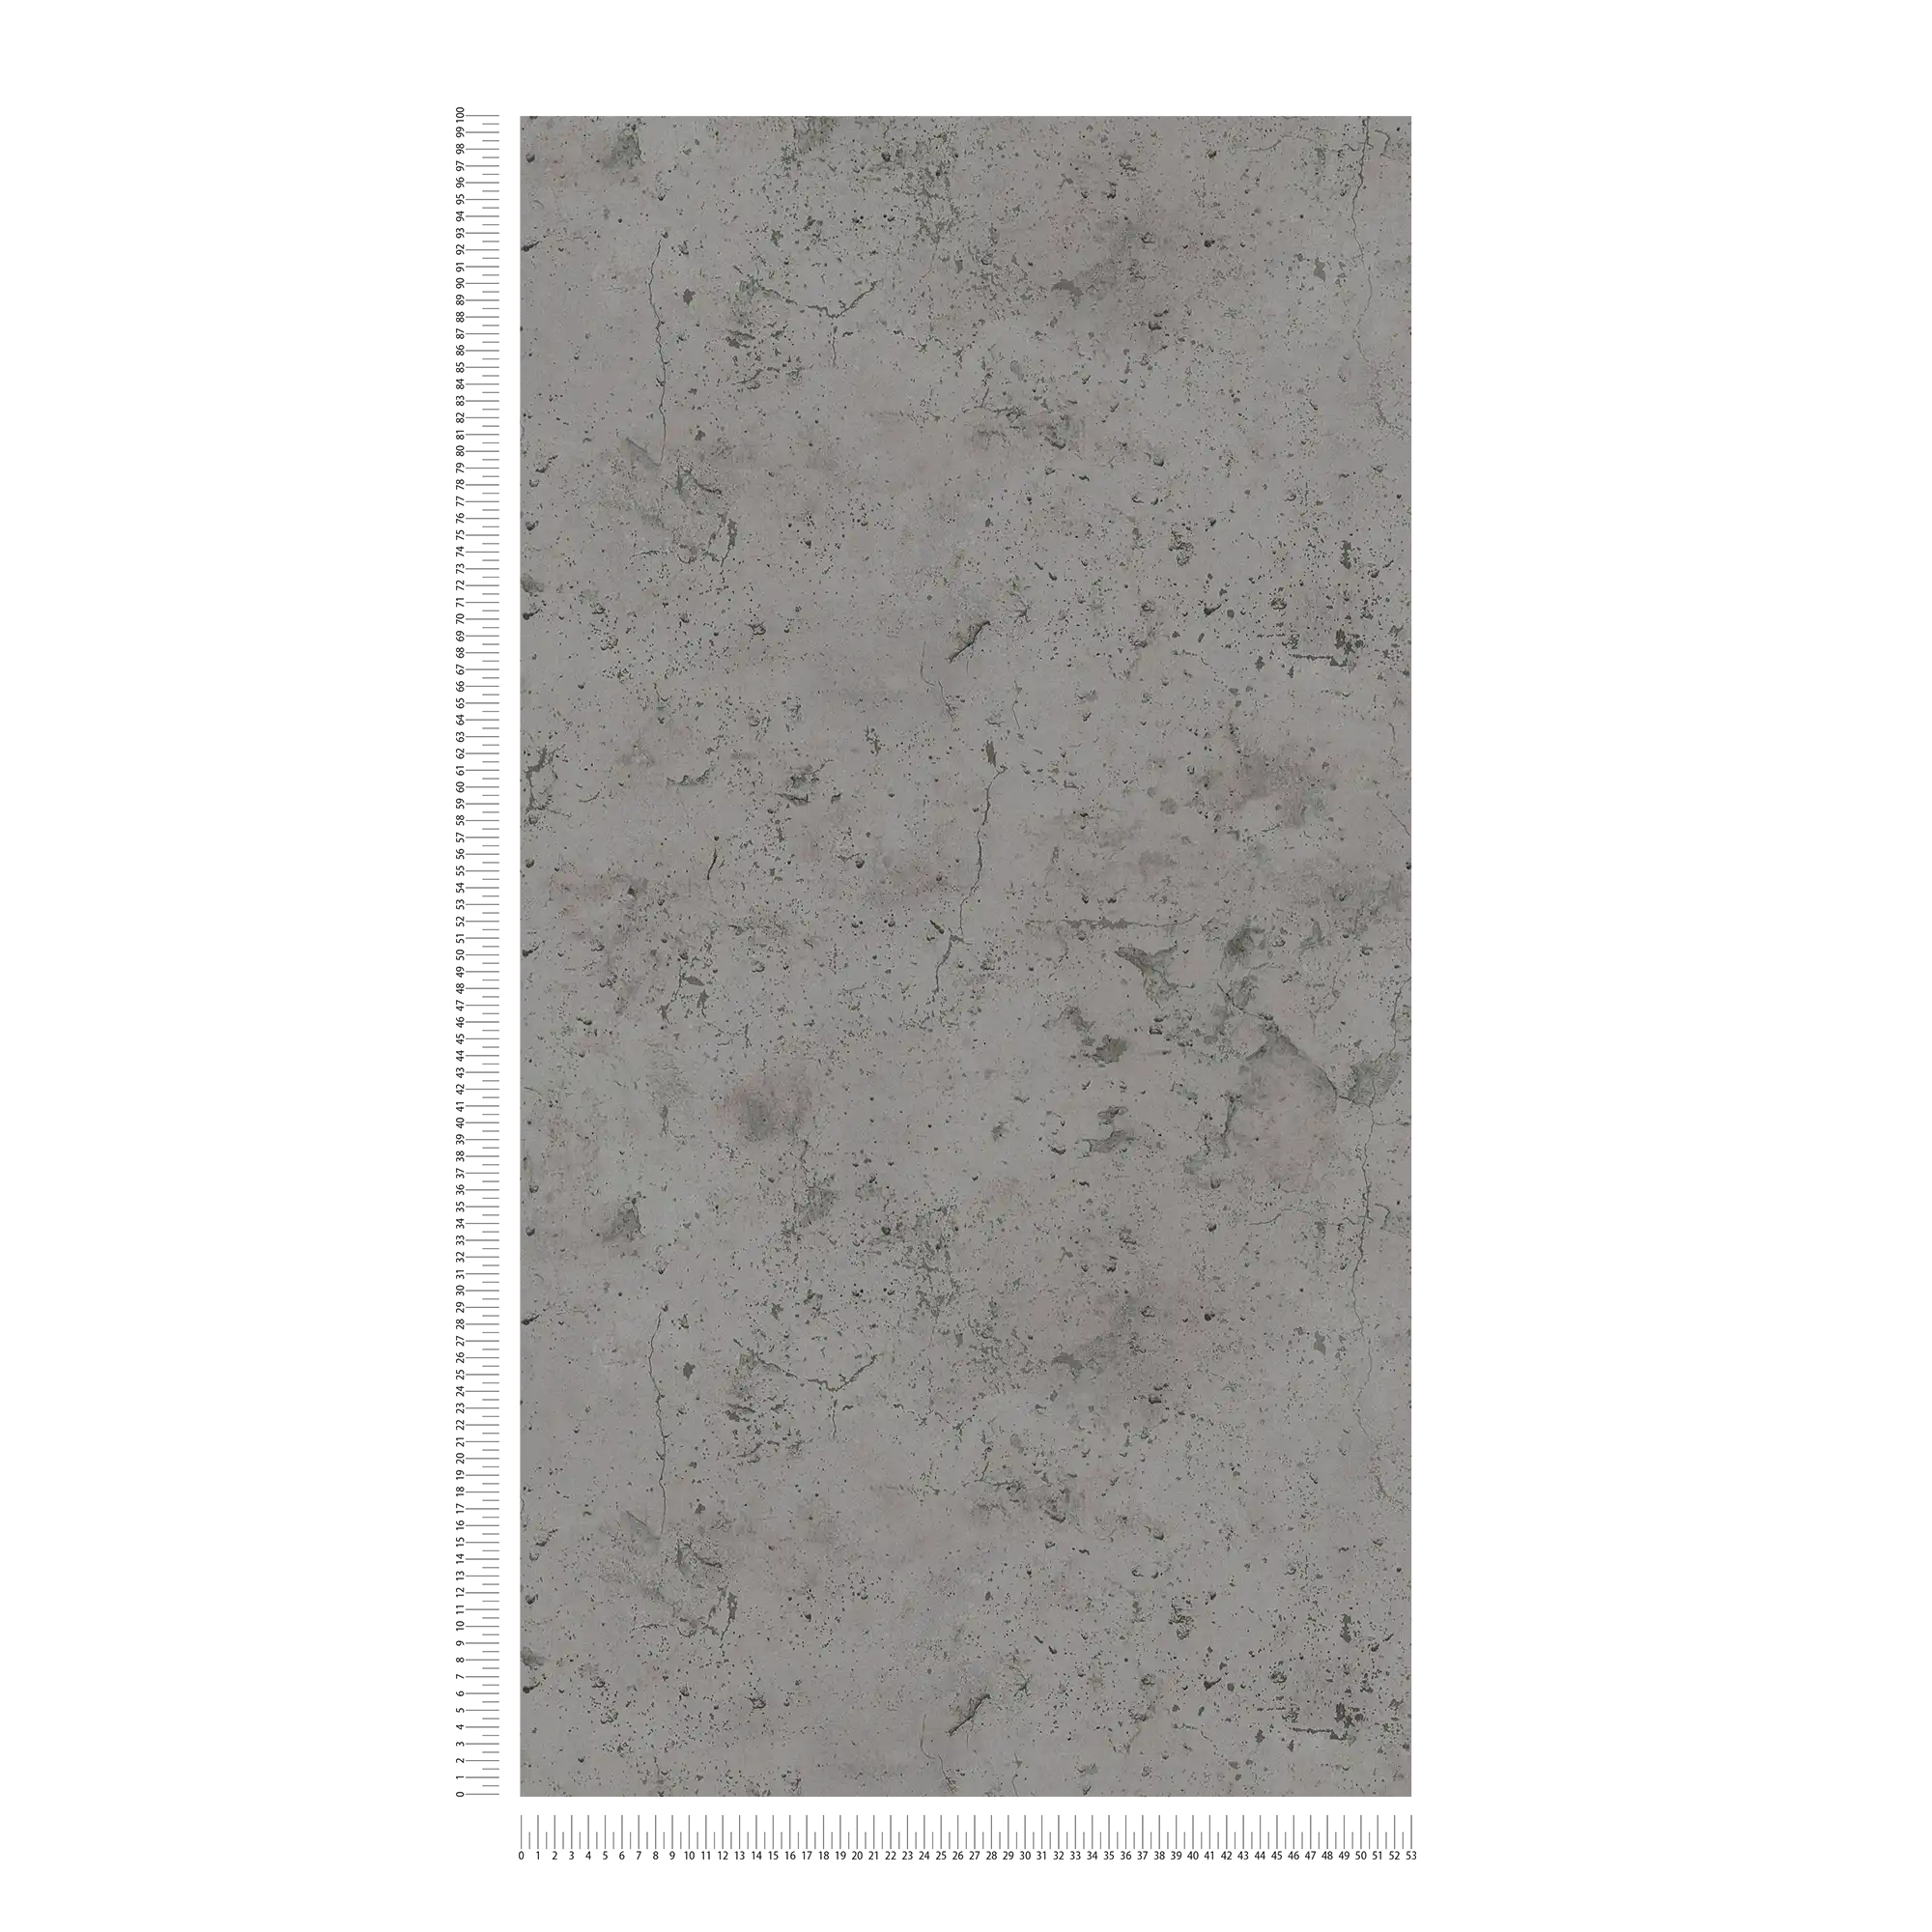             Carta da parati in cemento in stile industriale - grigio-marrone, tortora
        